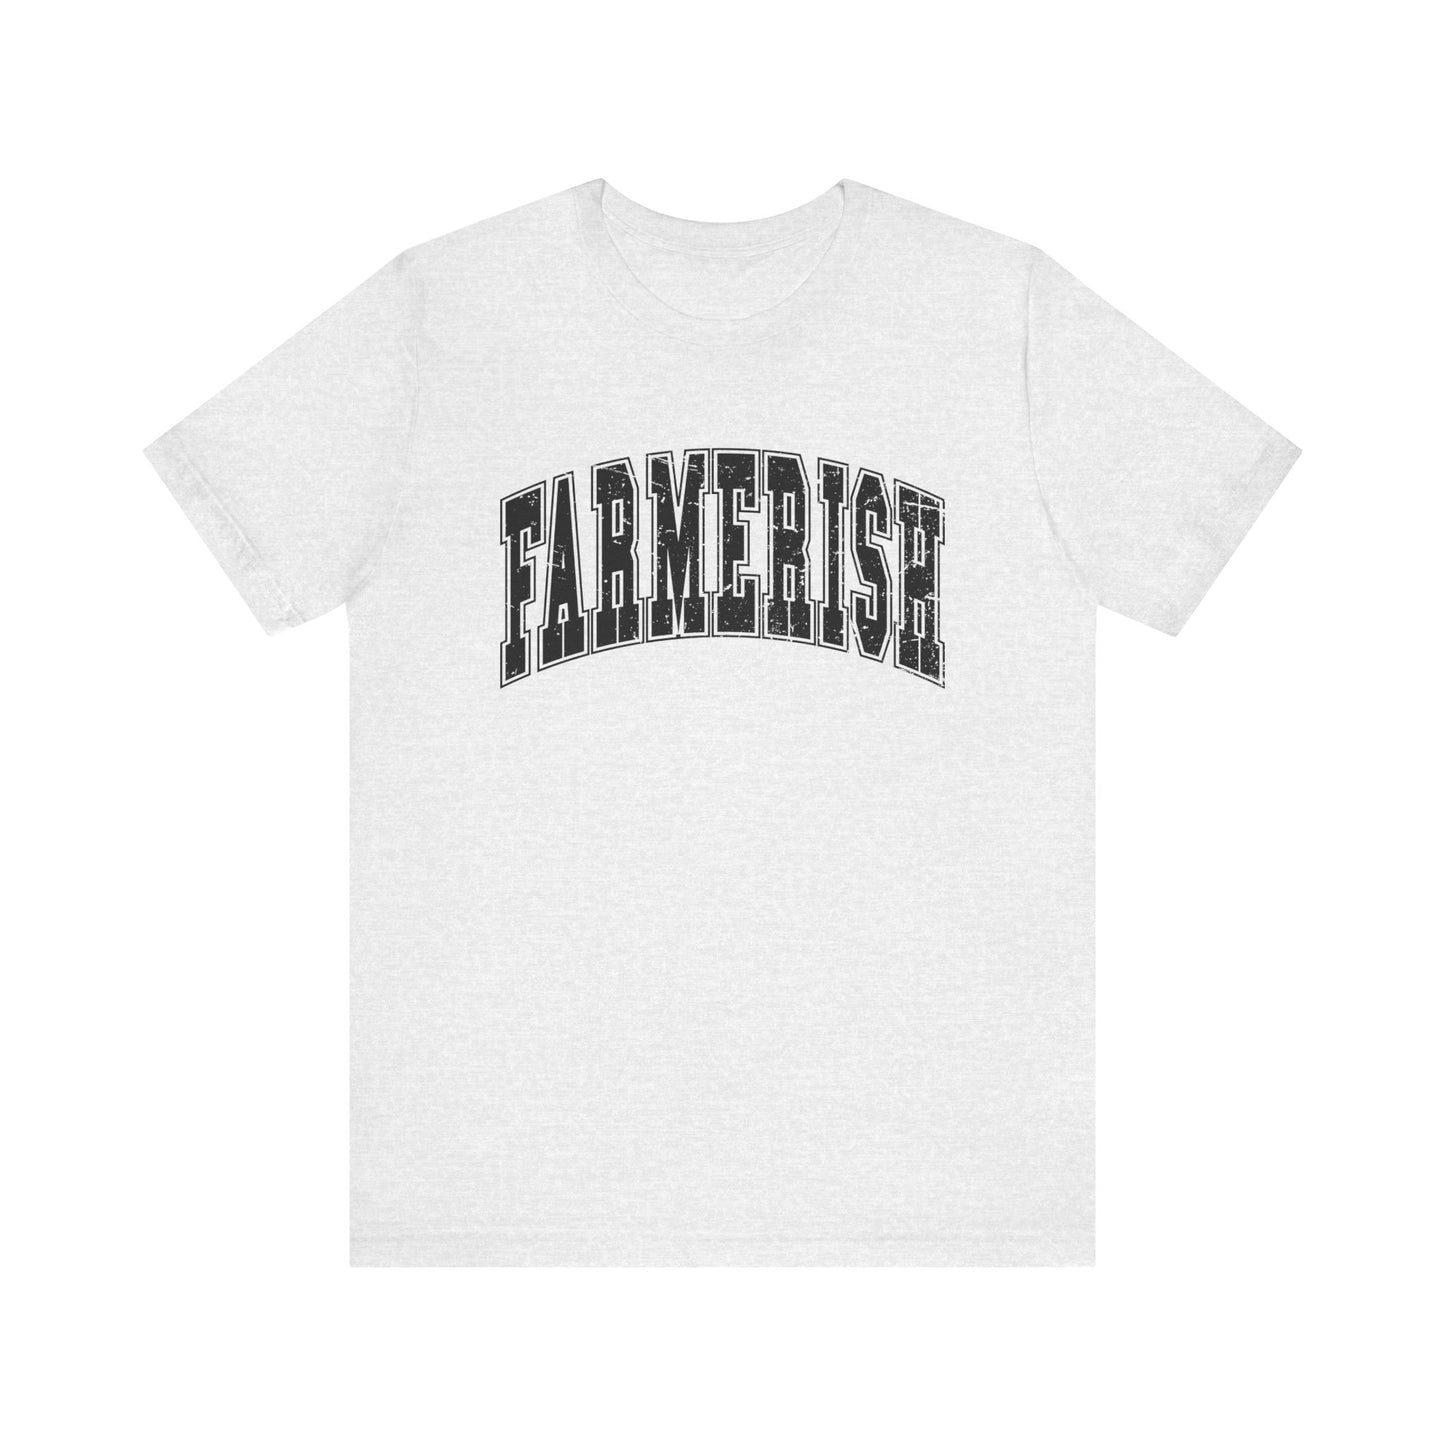 Farmerish Adult Unisex Tshirt